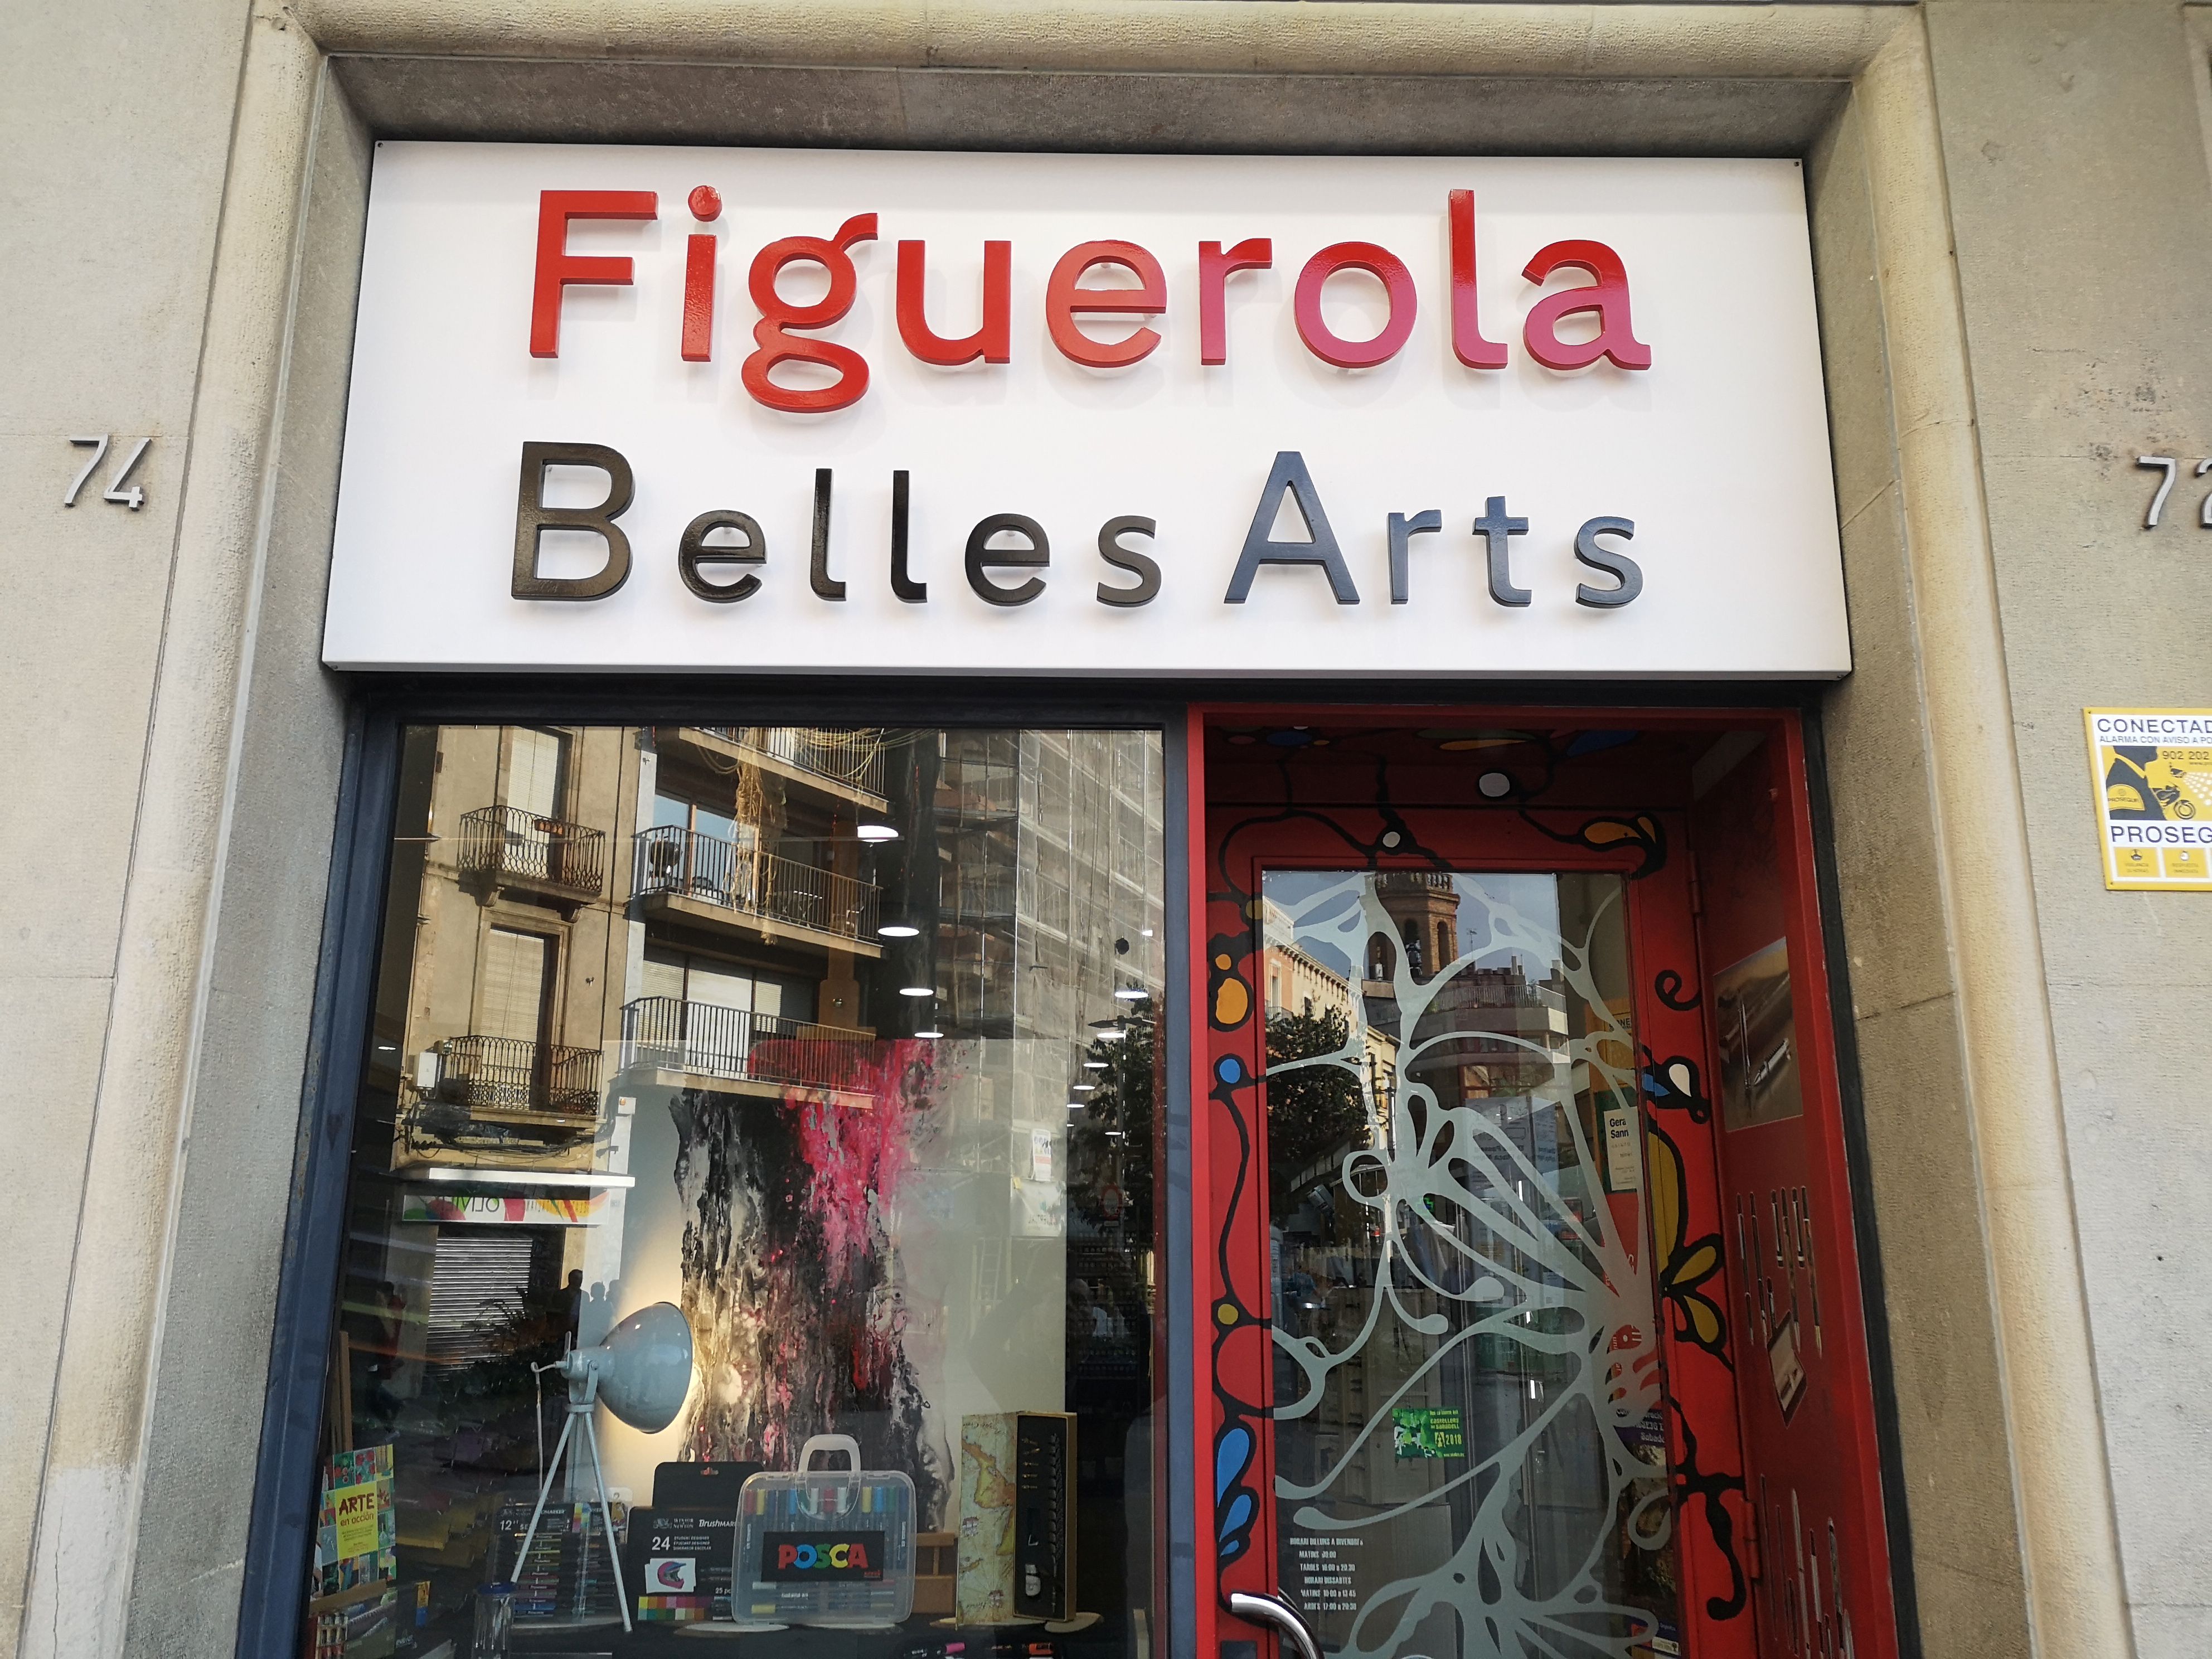 Images Figuerola Belles Arts